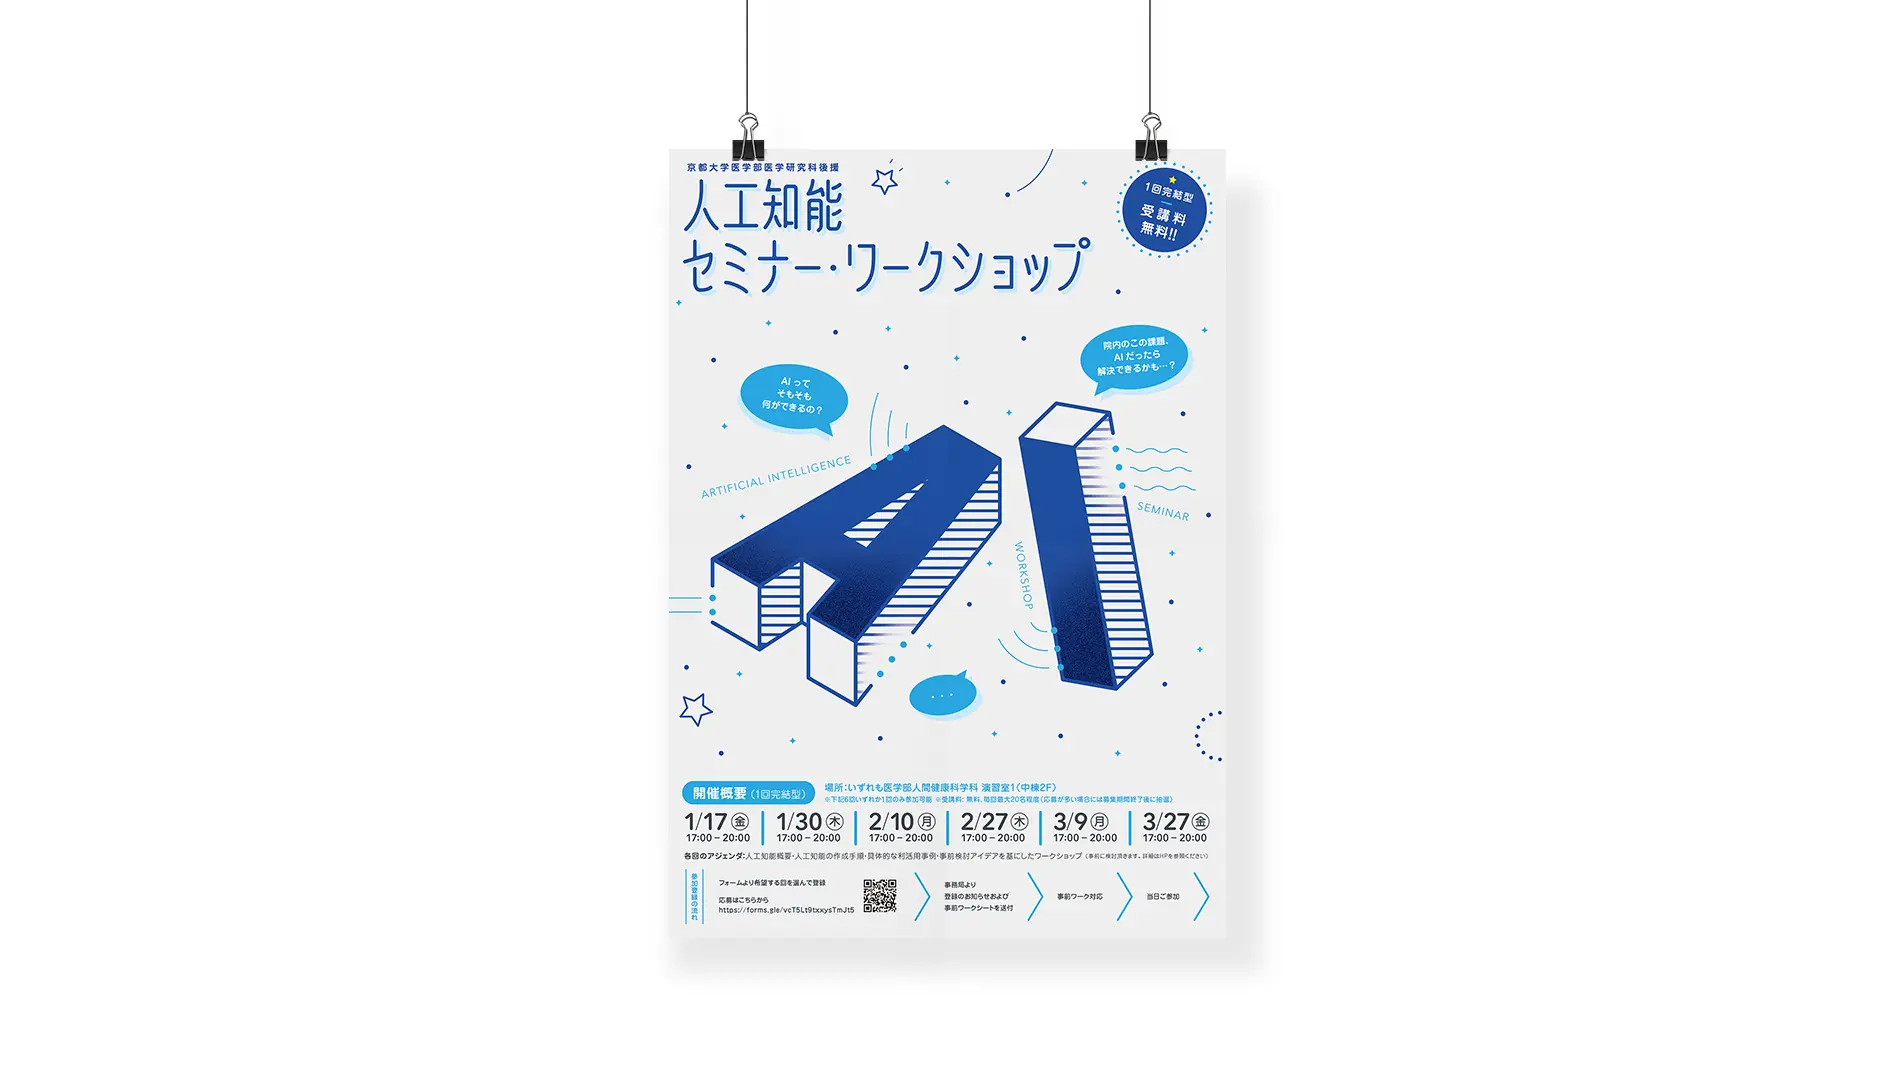 京都大学人工知能セミナーポスターデザイン